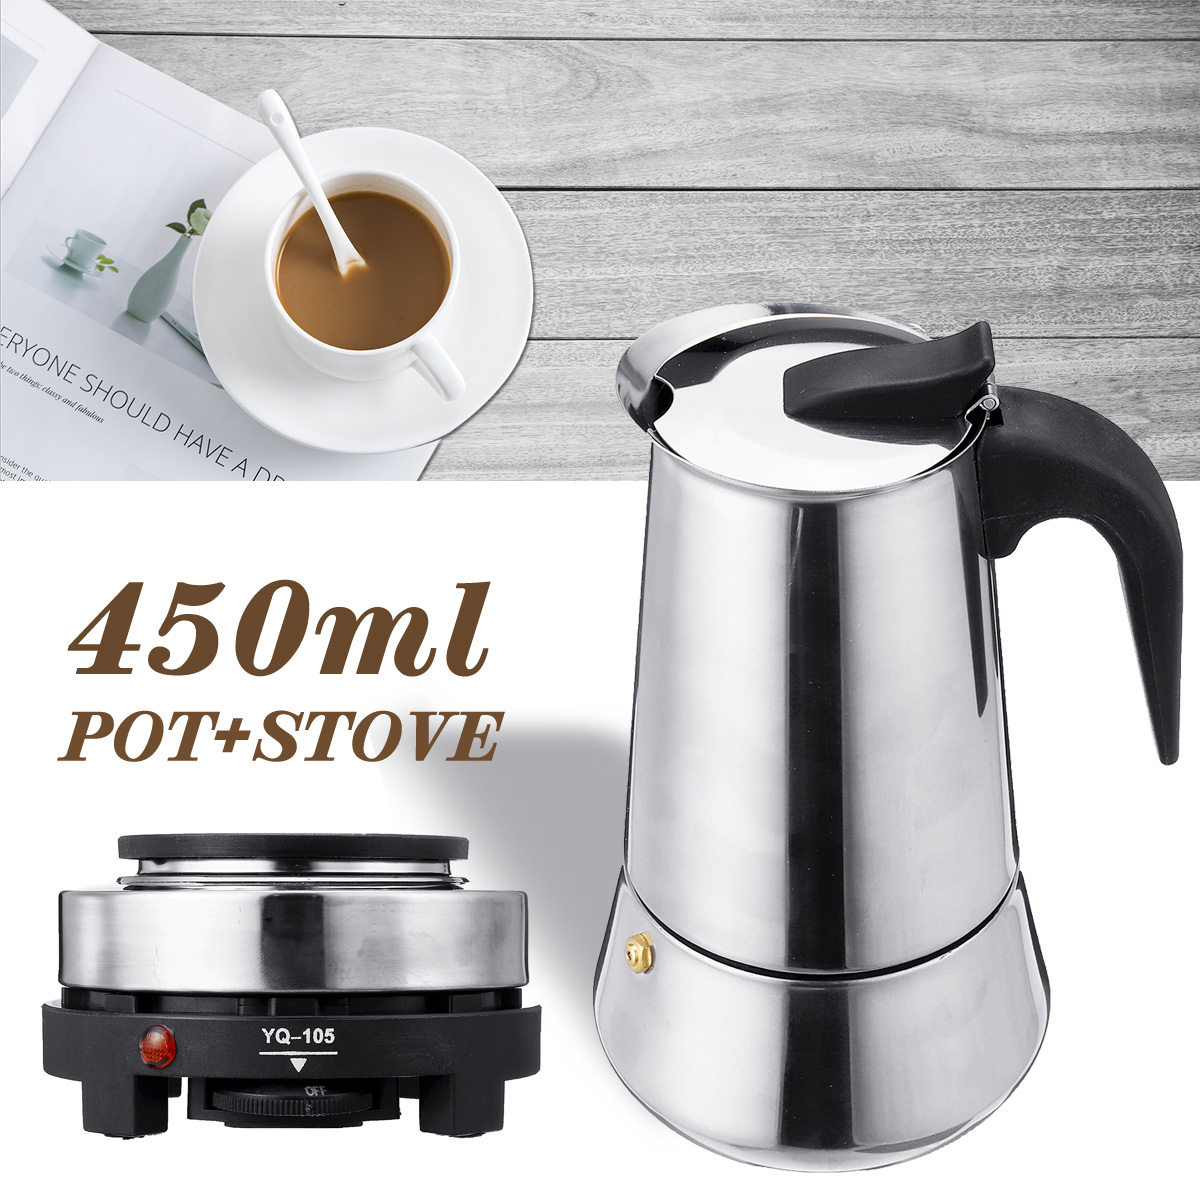 220V 500W 450ml Portable Coffee Espresso Pot Maker & Electric Stove Home Kitchen Tools 13